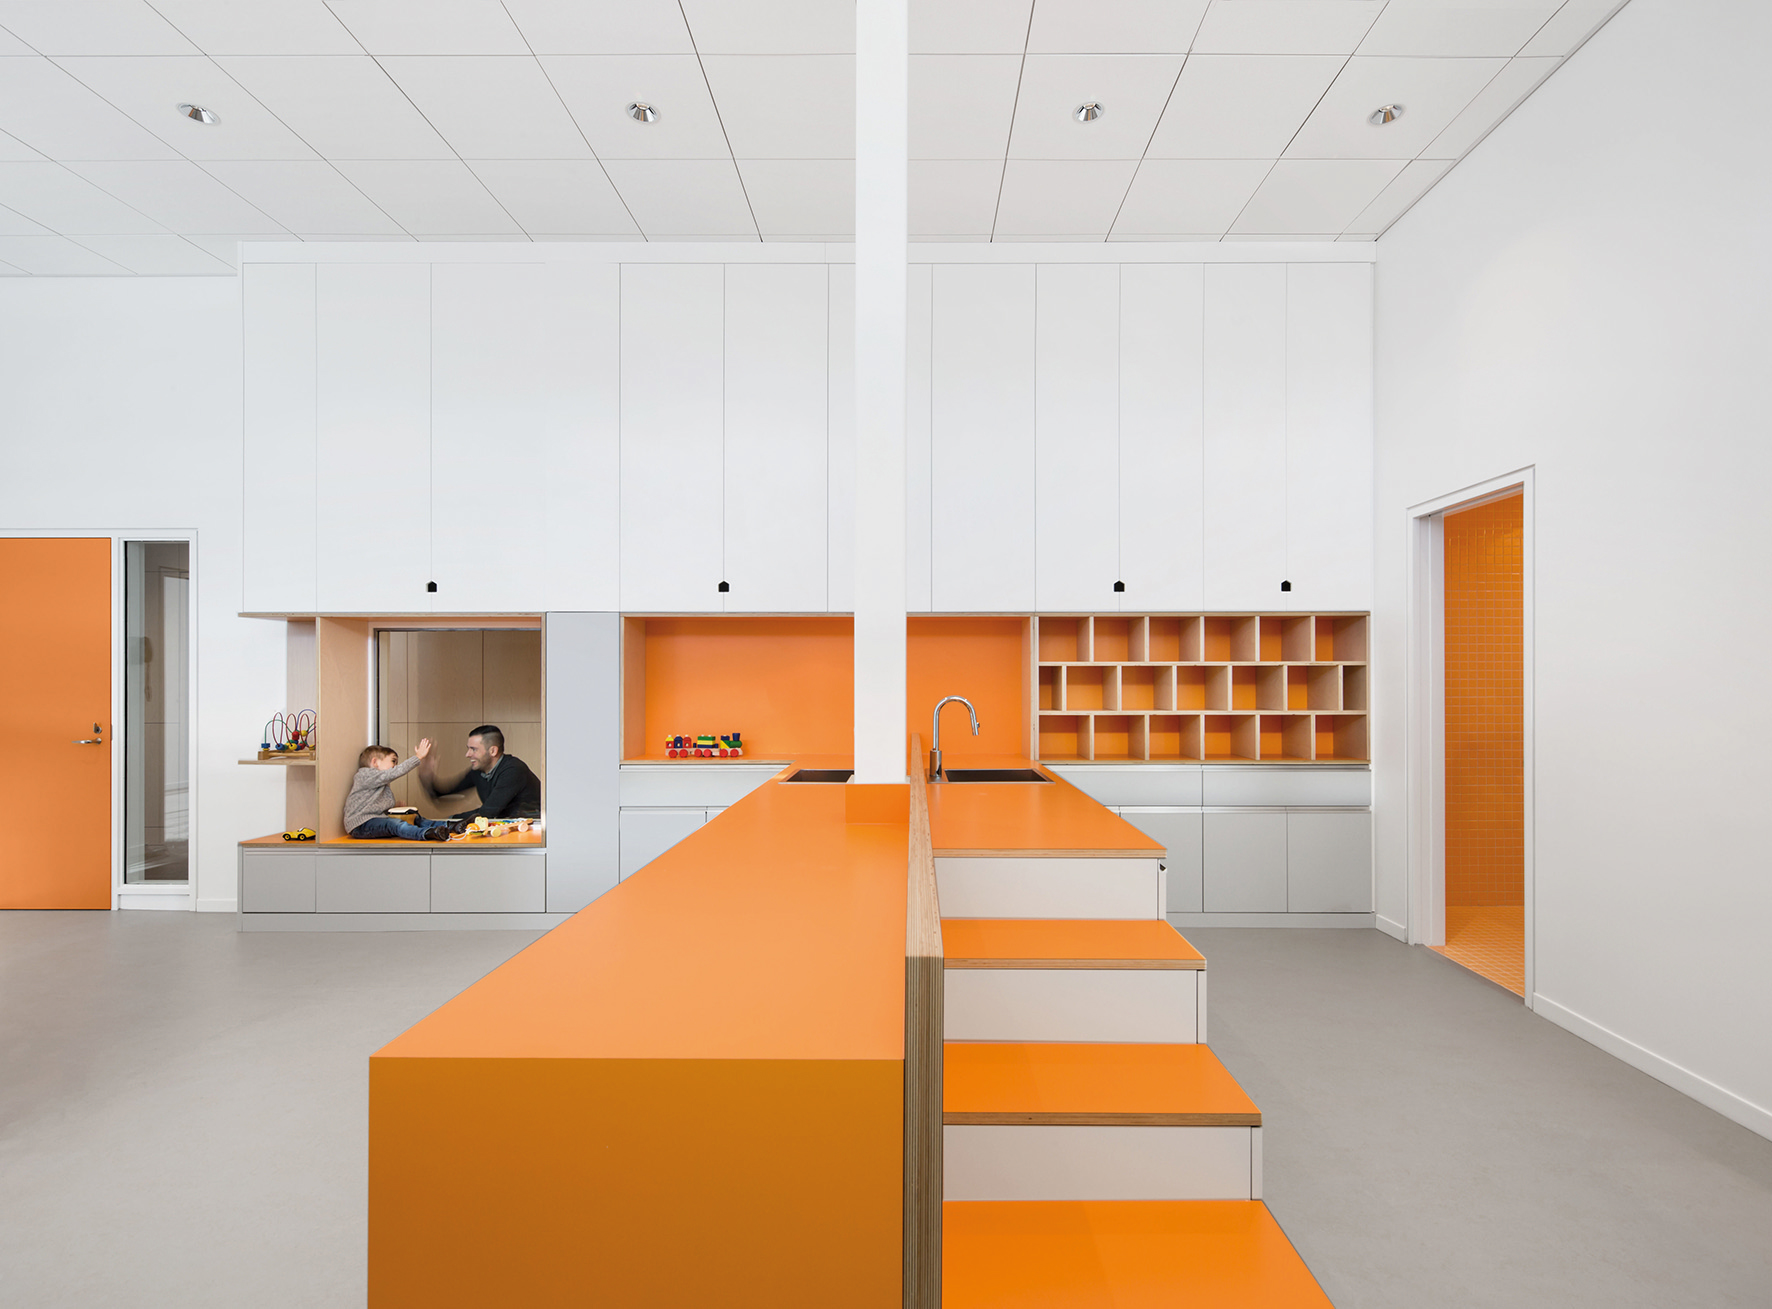 Miestnosť pre deti v oranžových farbách.